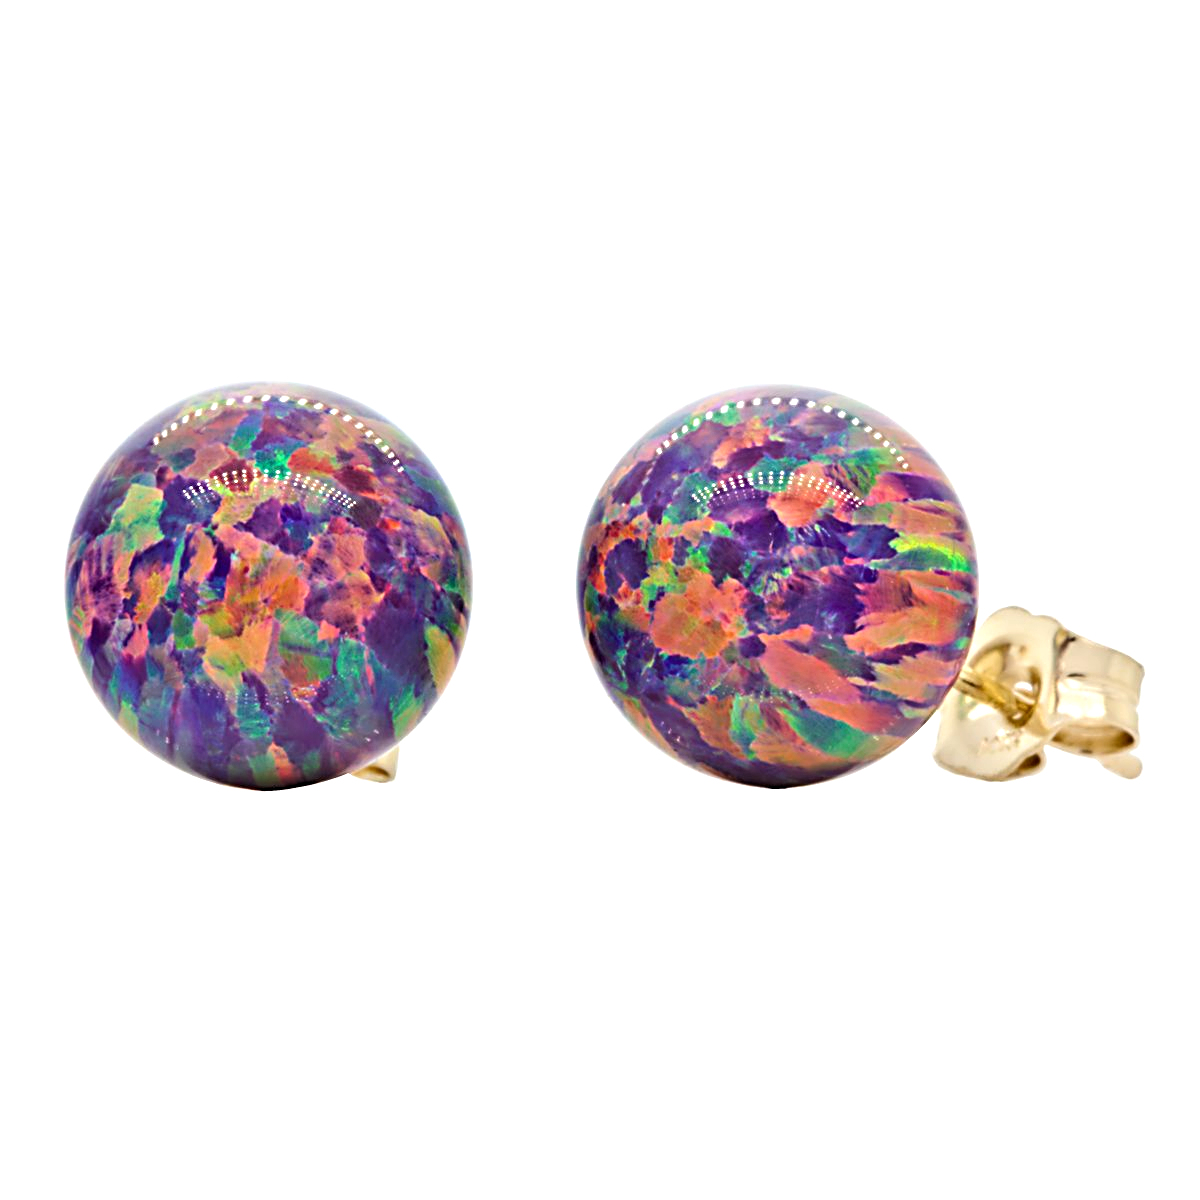 Trustmark 14K White Gold Royal Lavender Synthetic Opal Ball Stud Post Earrings 